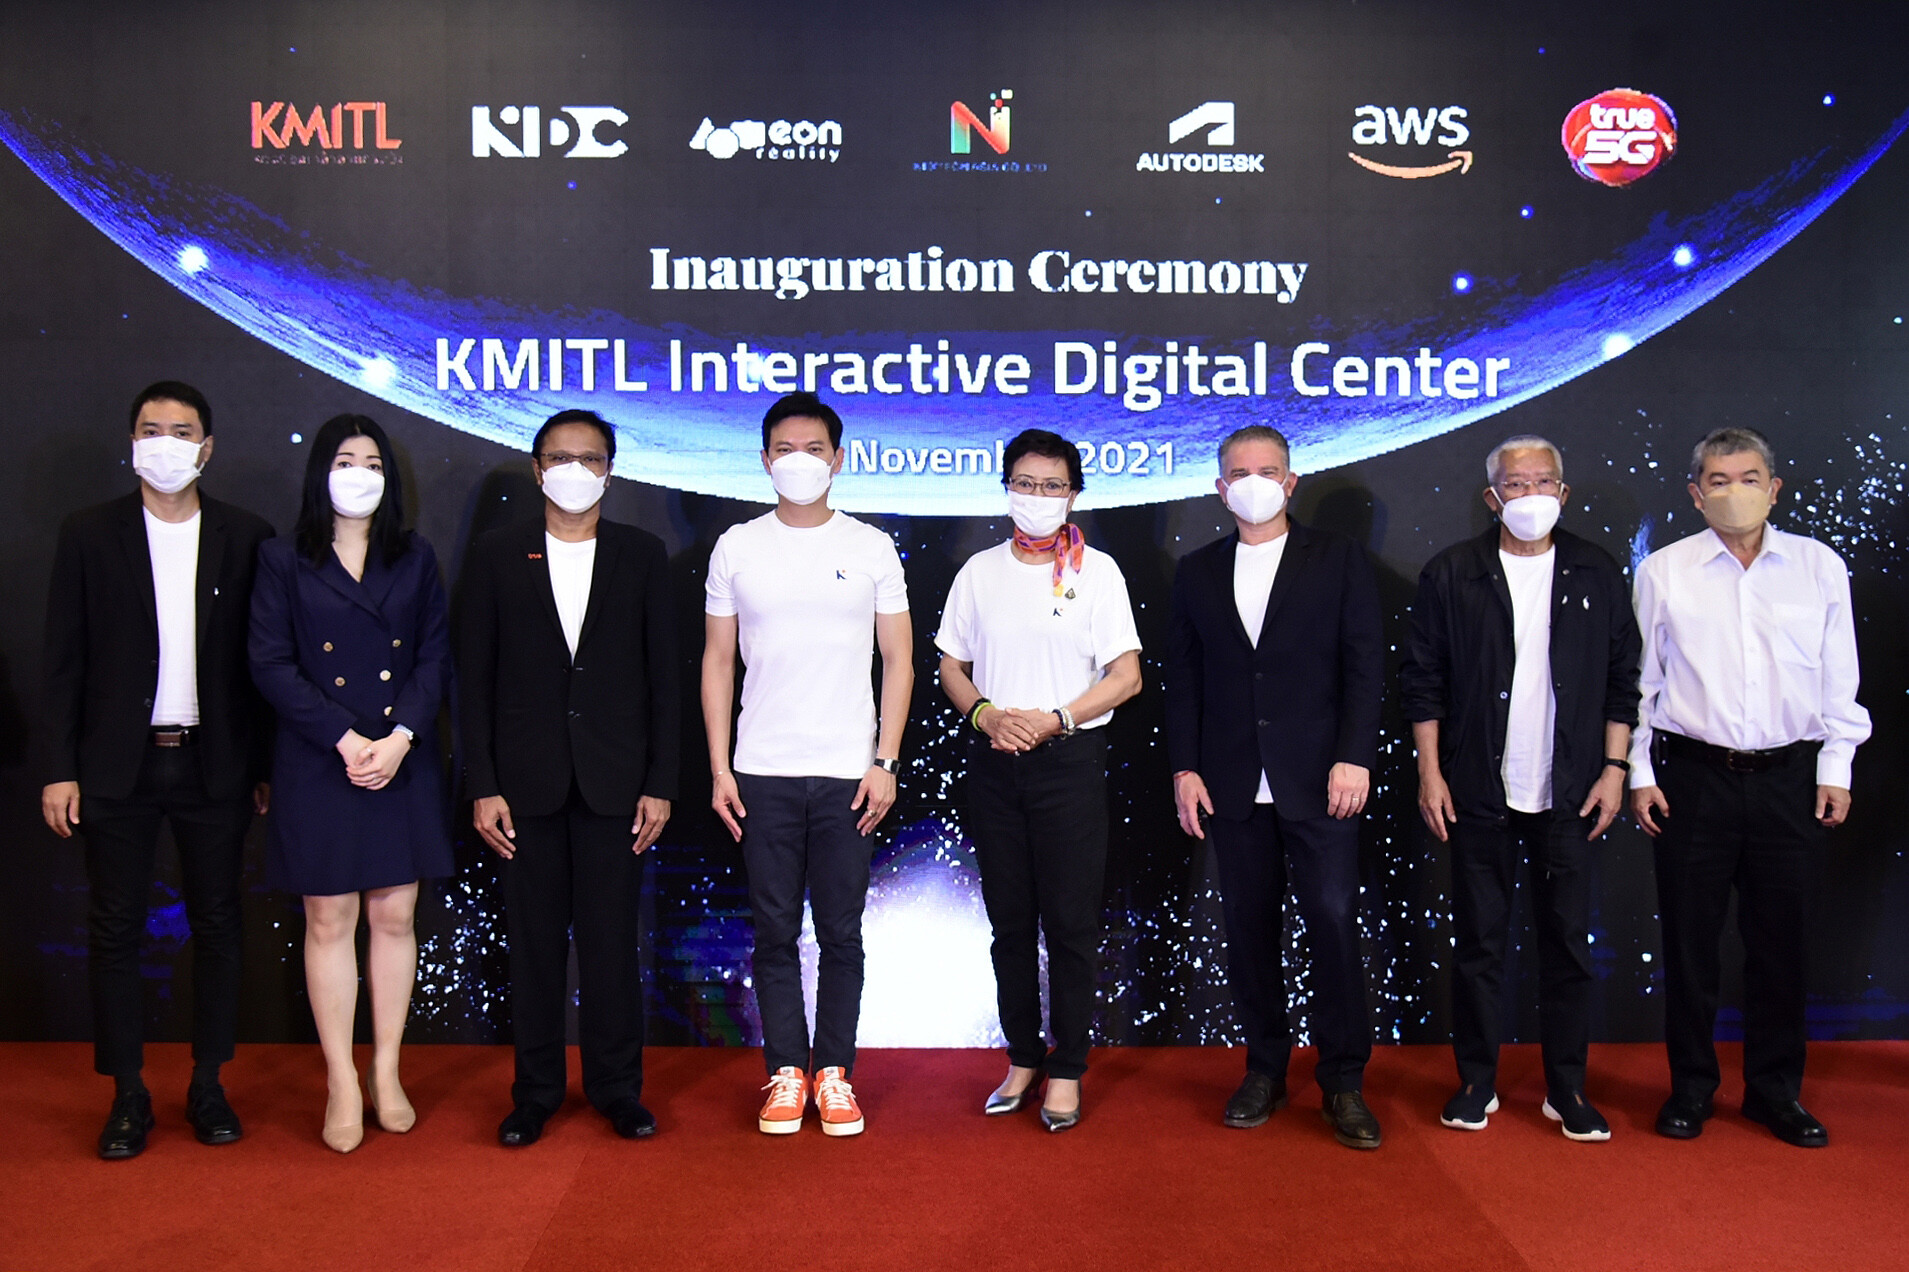 สจล. จับมือ อิออน เรียลลิตี้ เปิดศูนย์ KMITL Interactive Digital Center ศูนย์วิจัยและเรียนรู้เทคโนโลยีเออาร์-วีอาร์ แบบครบวงจรแห่งแรกของไทย